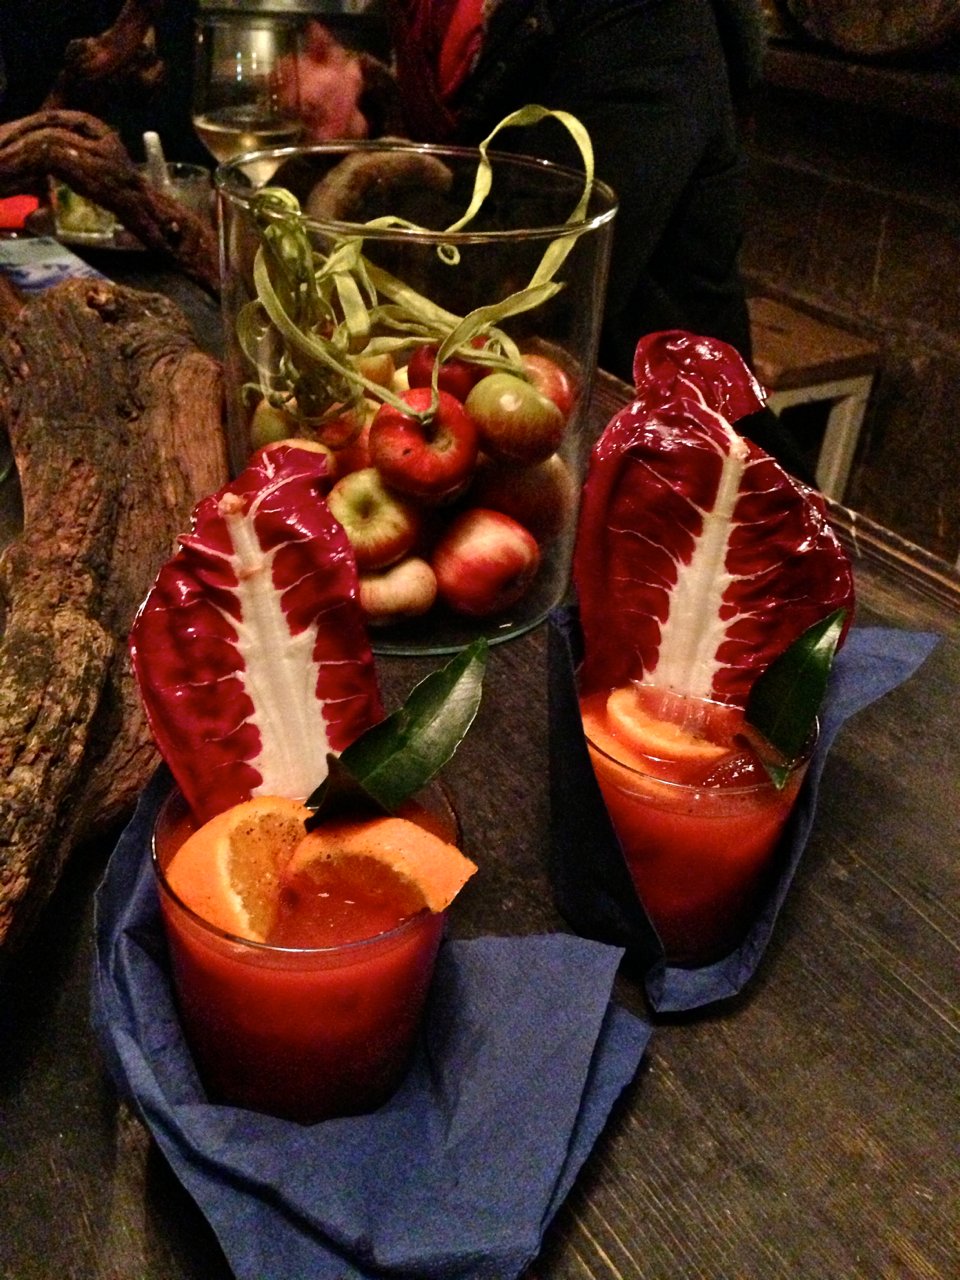 Primeiro o drink, bloody mary. Quem segue aqui sabe que é um dos nossos drinks favoritos. Este é com laranja e gengibre.